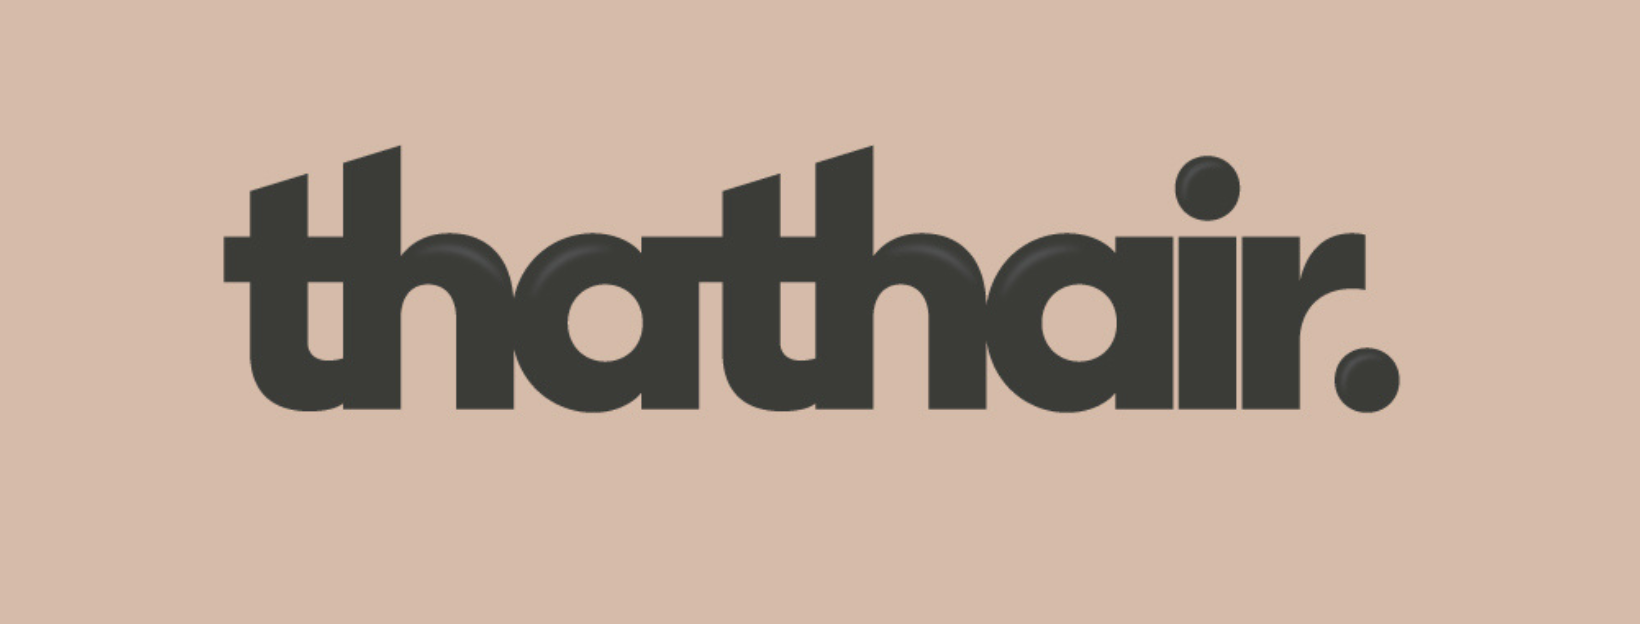 ThatHair logo